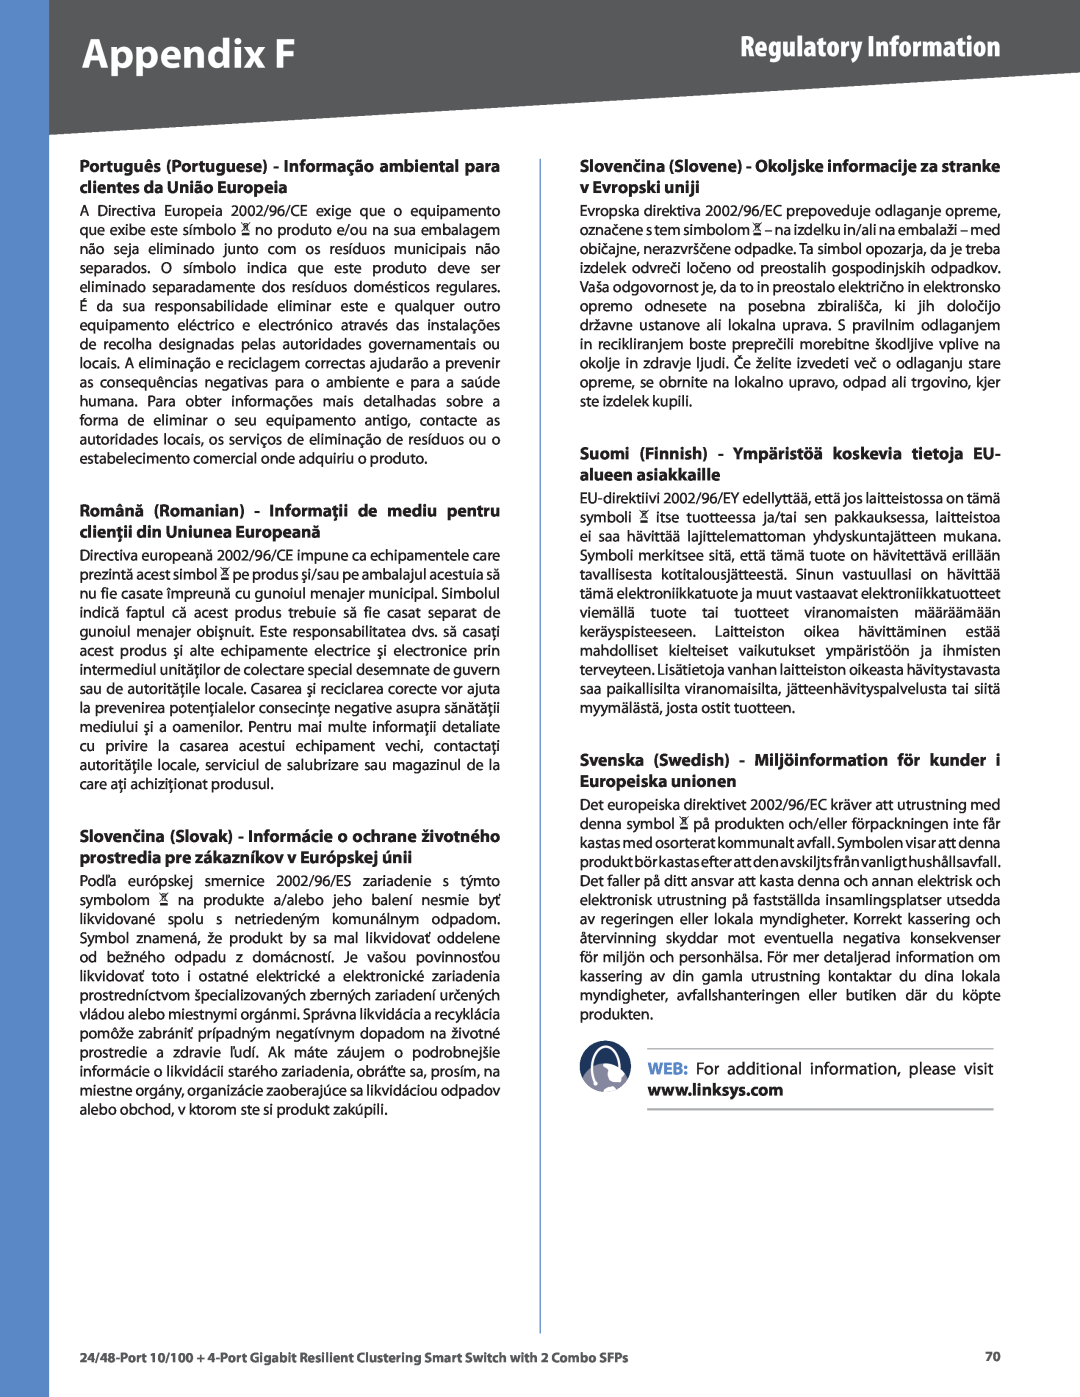 Linksys SLM224G4S Appendix F, Regulatory Information, Suomi Finnish - Ympäristöä koskevia tietoja EU- alueen asiakkaille 